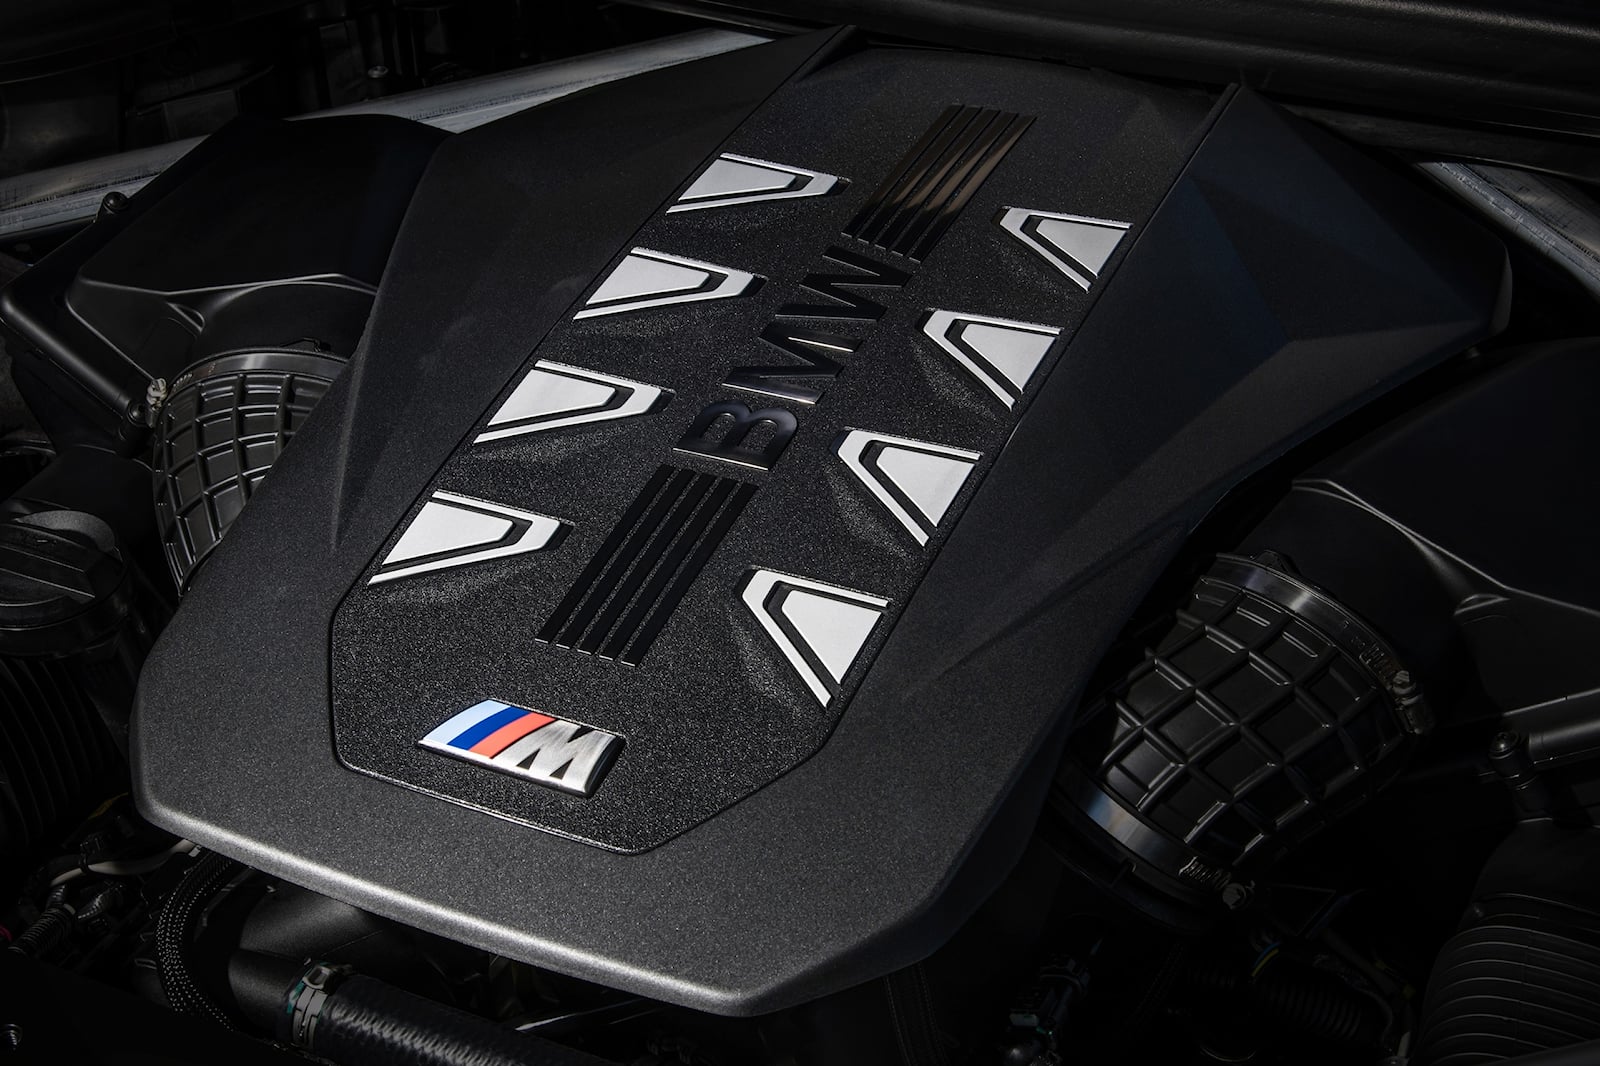 На этой неделе BMW представил полностью обновленный X7 с его революционно новым внешним видом. Хотя некоторым может не понравиться новая тема разделенных фар, которую все роскошные бумеры примут в будущем, нельзя отрицать, что эта визуальная подпись 